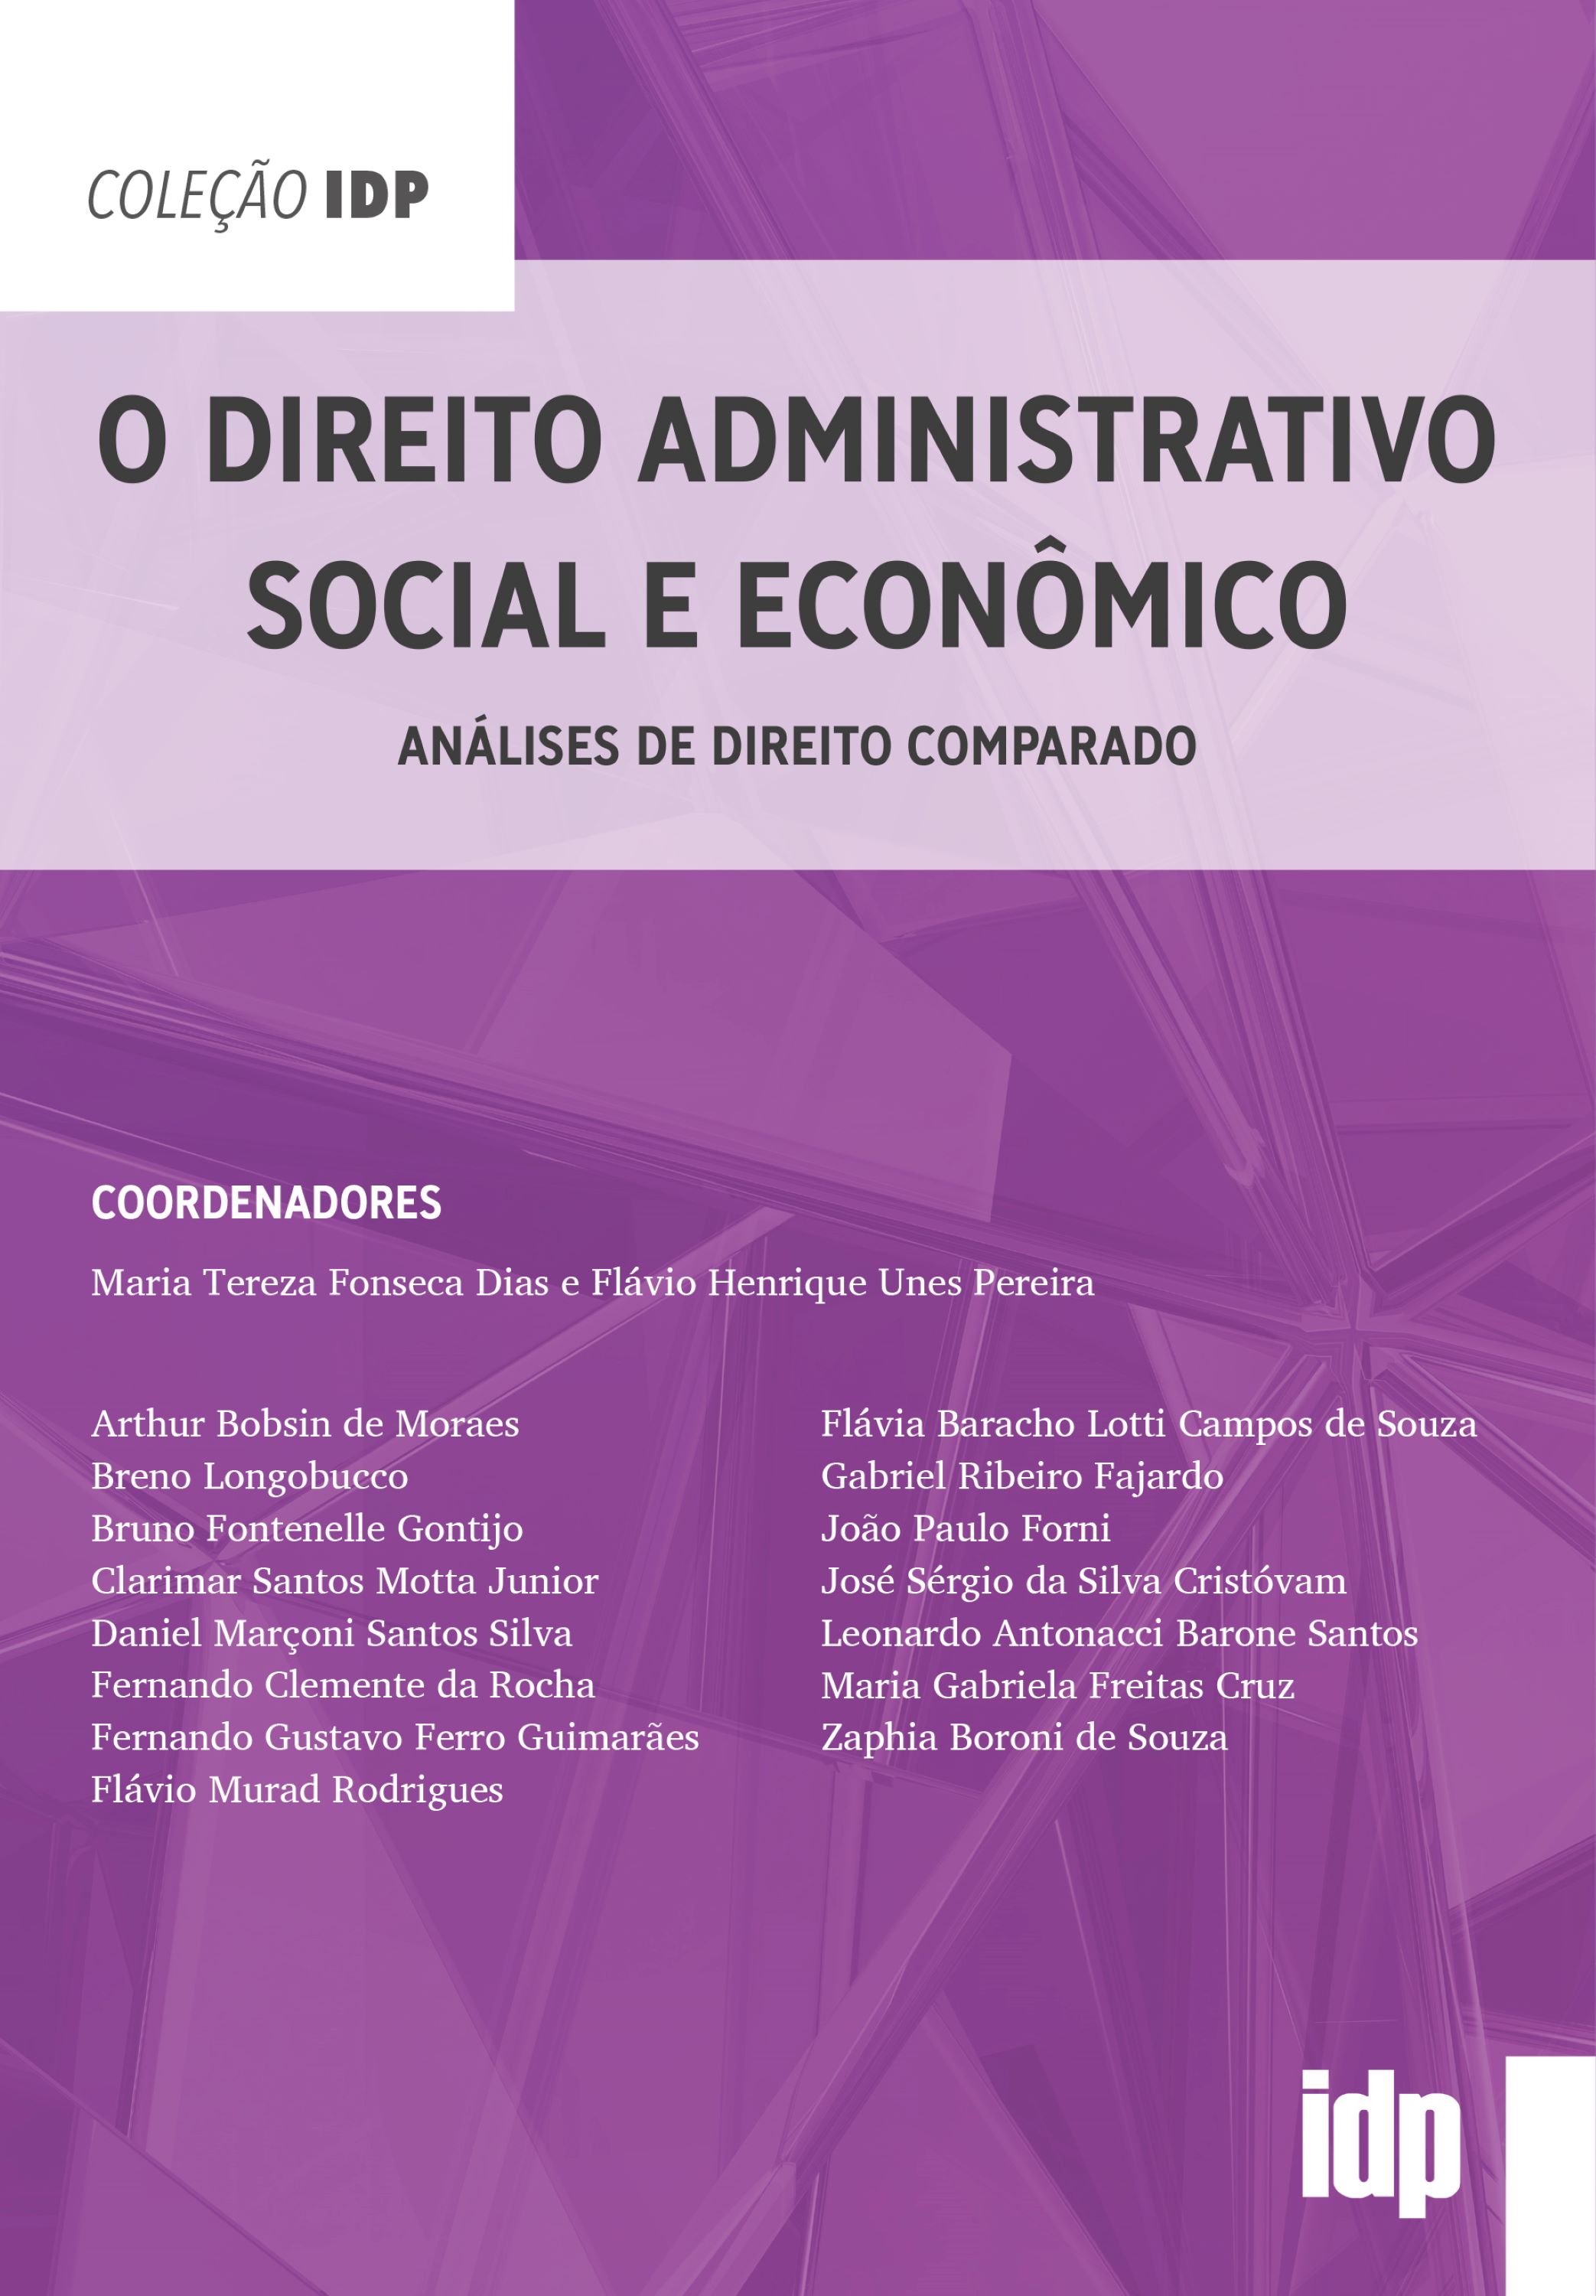 O Direito Administrativo Social e Econômico